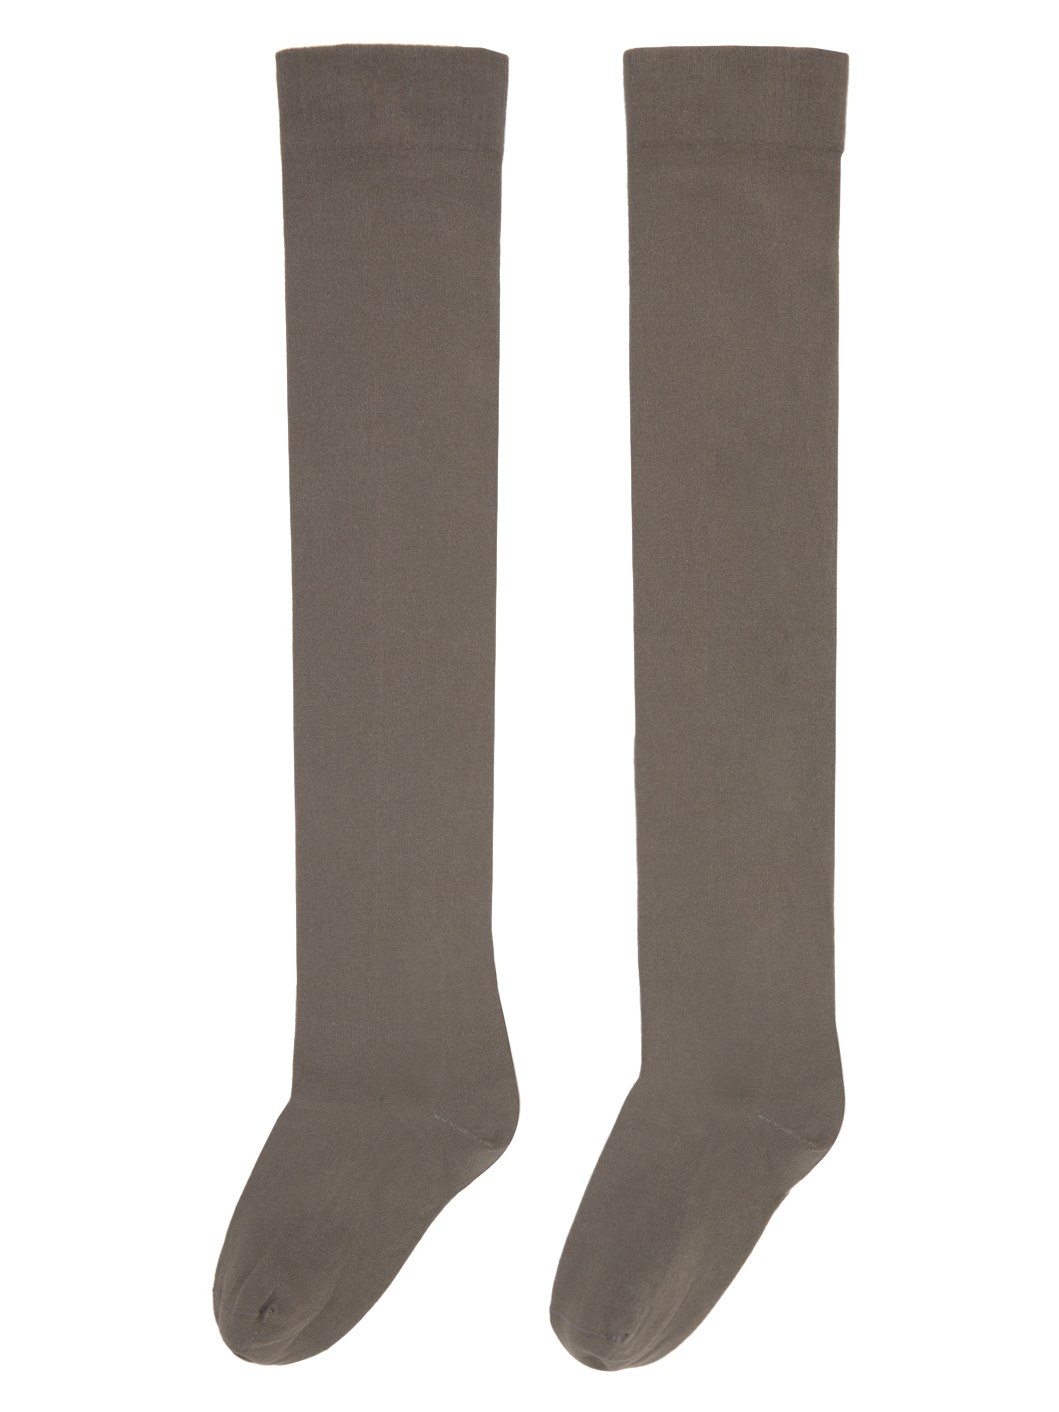 Taupe Semi-Sheer Socks - 2